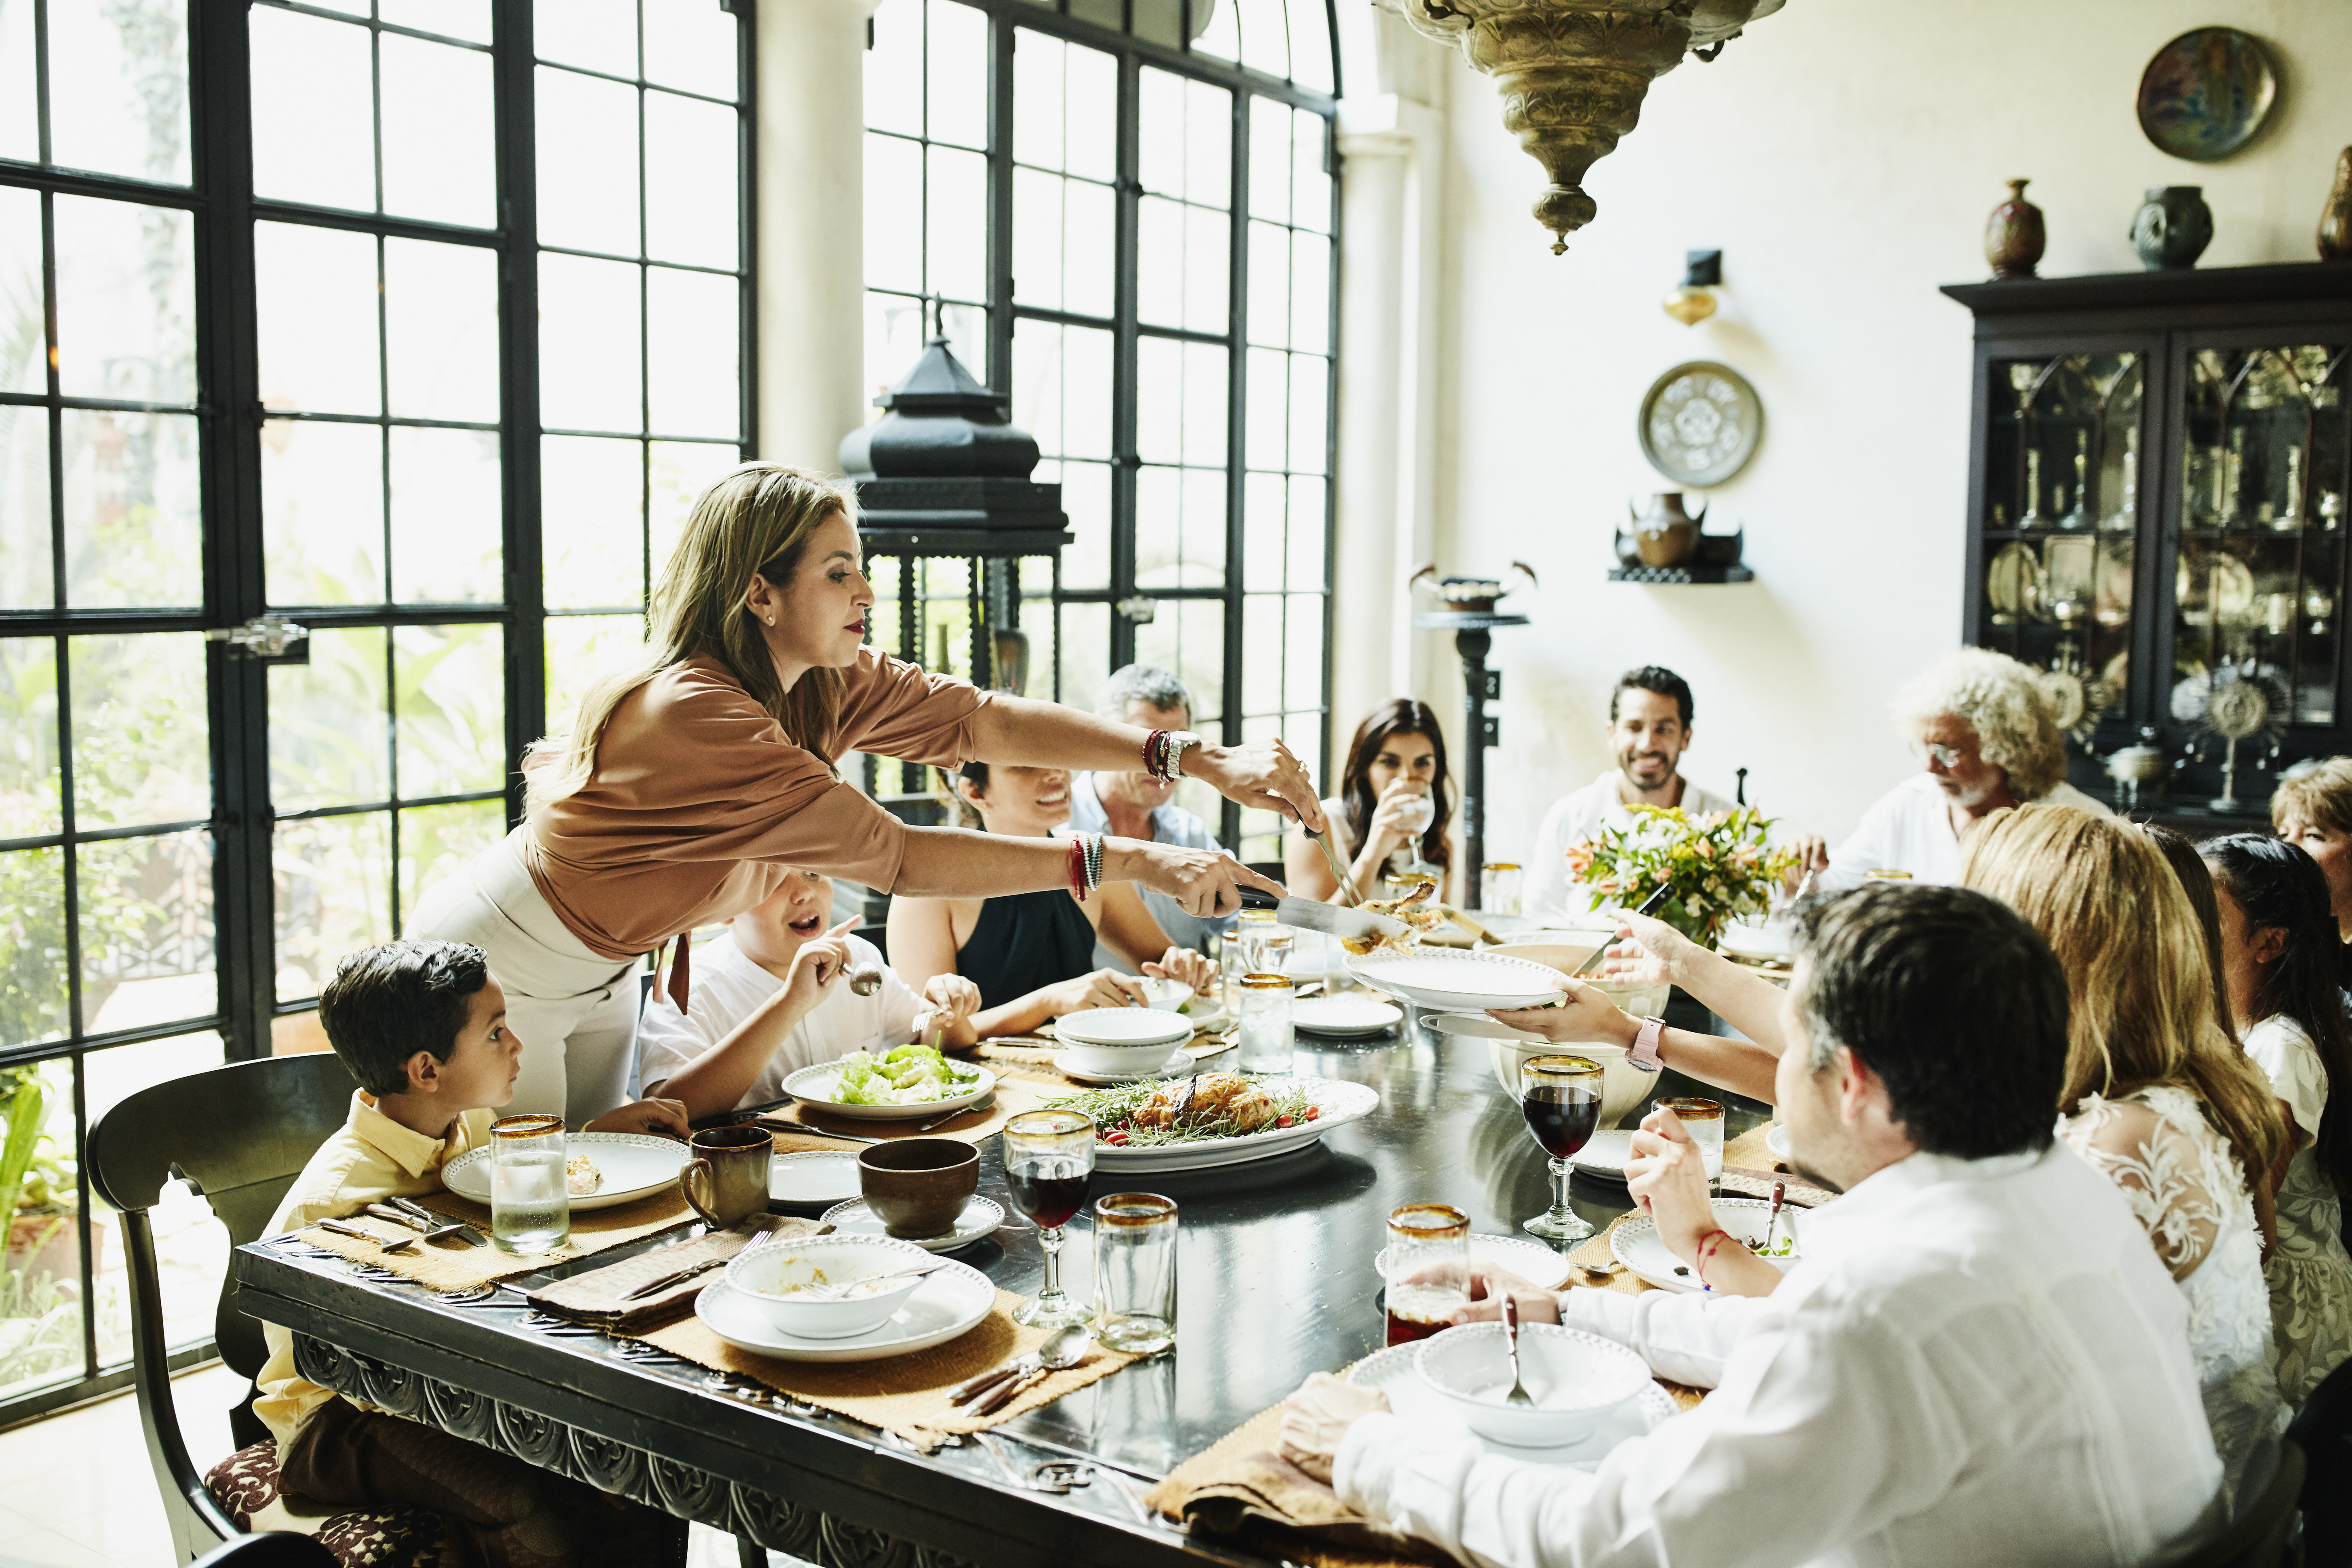 Eine Familie versammelt sich um einen Esstisch | Quelle: Getty Images